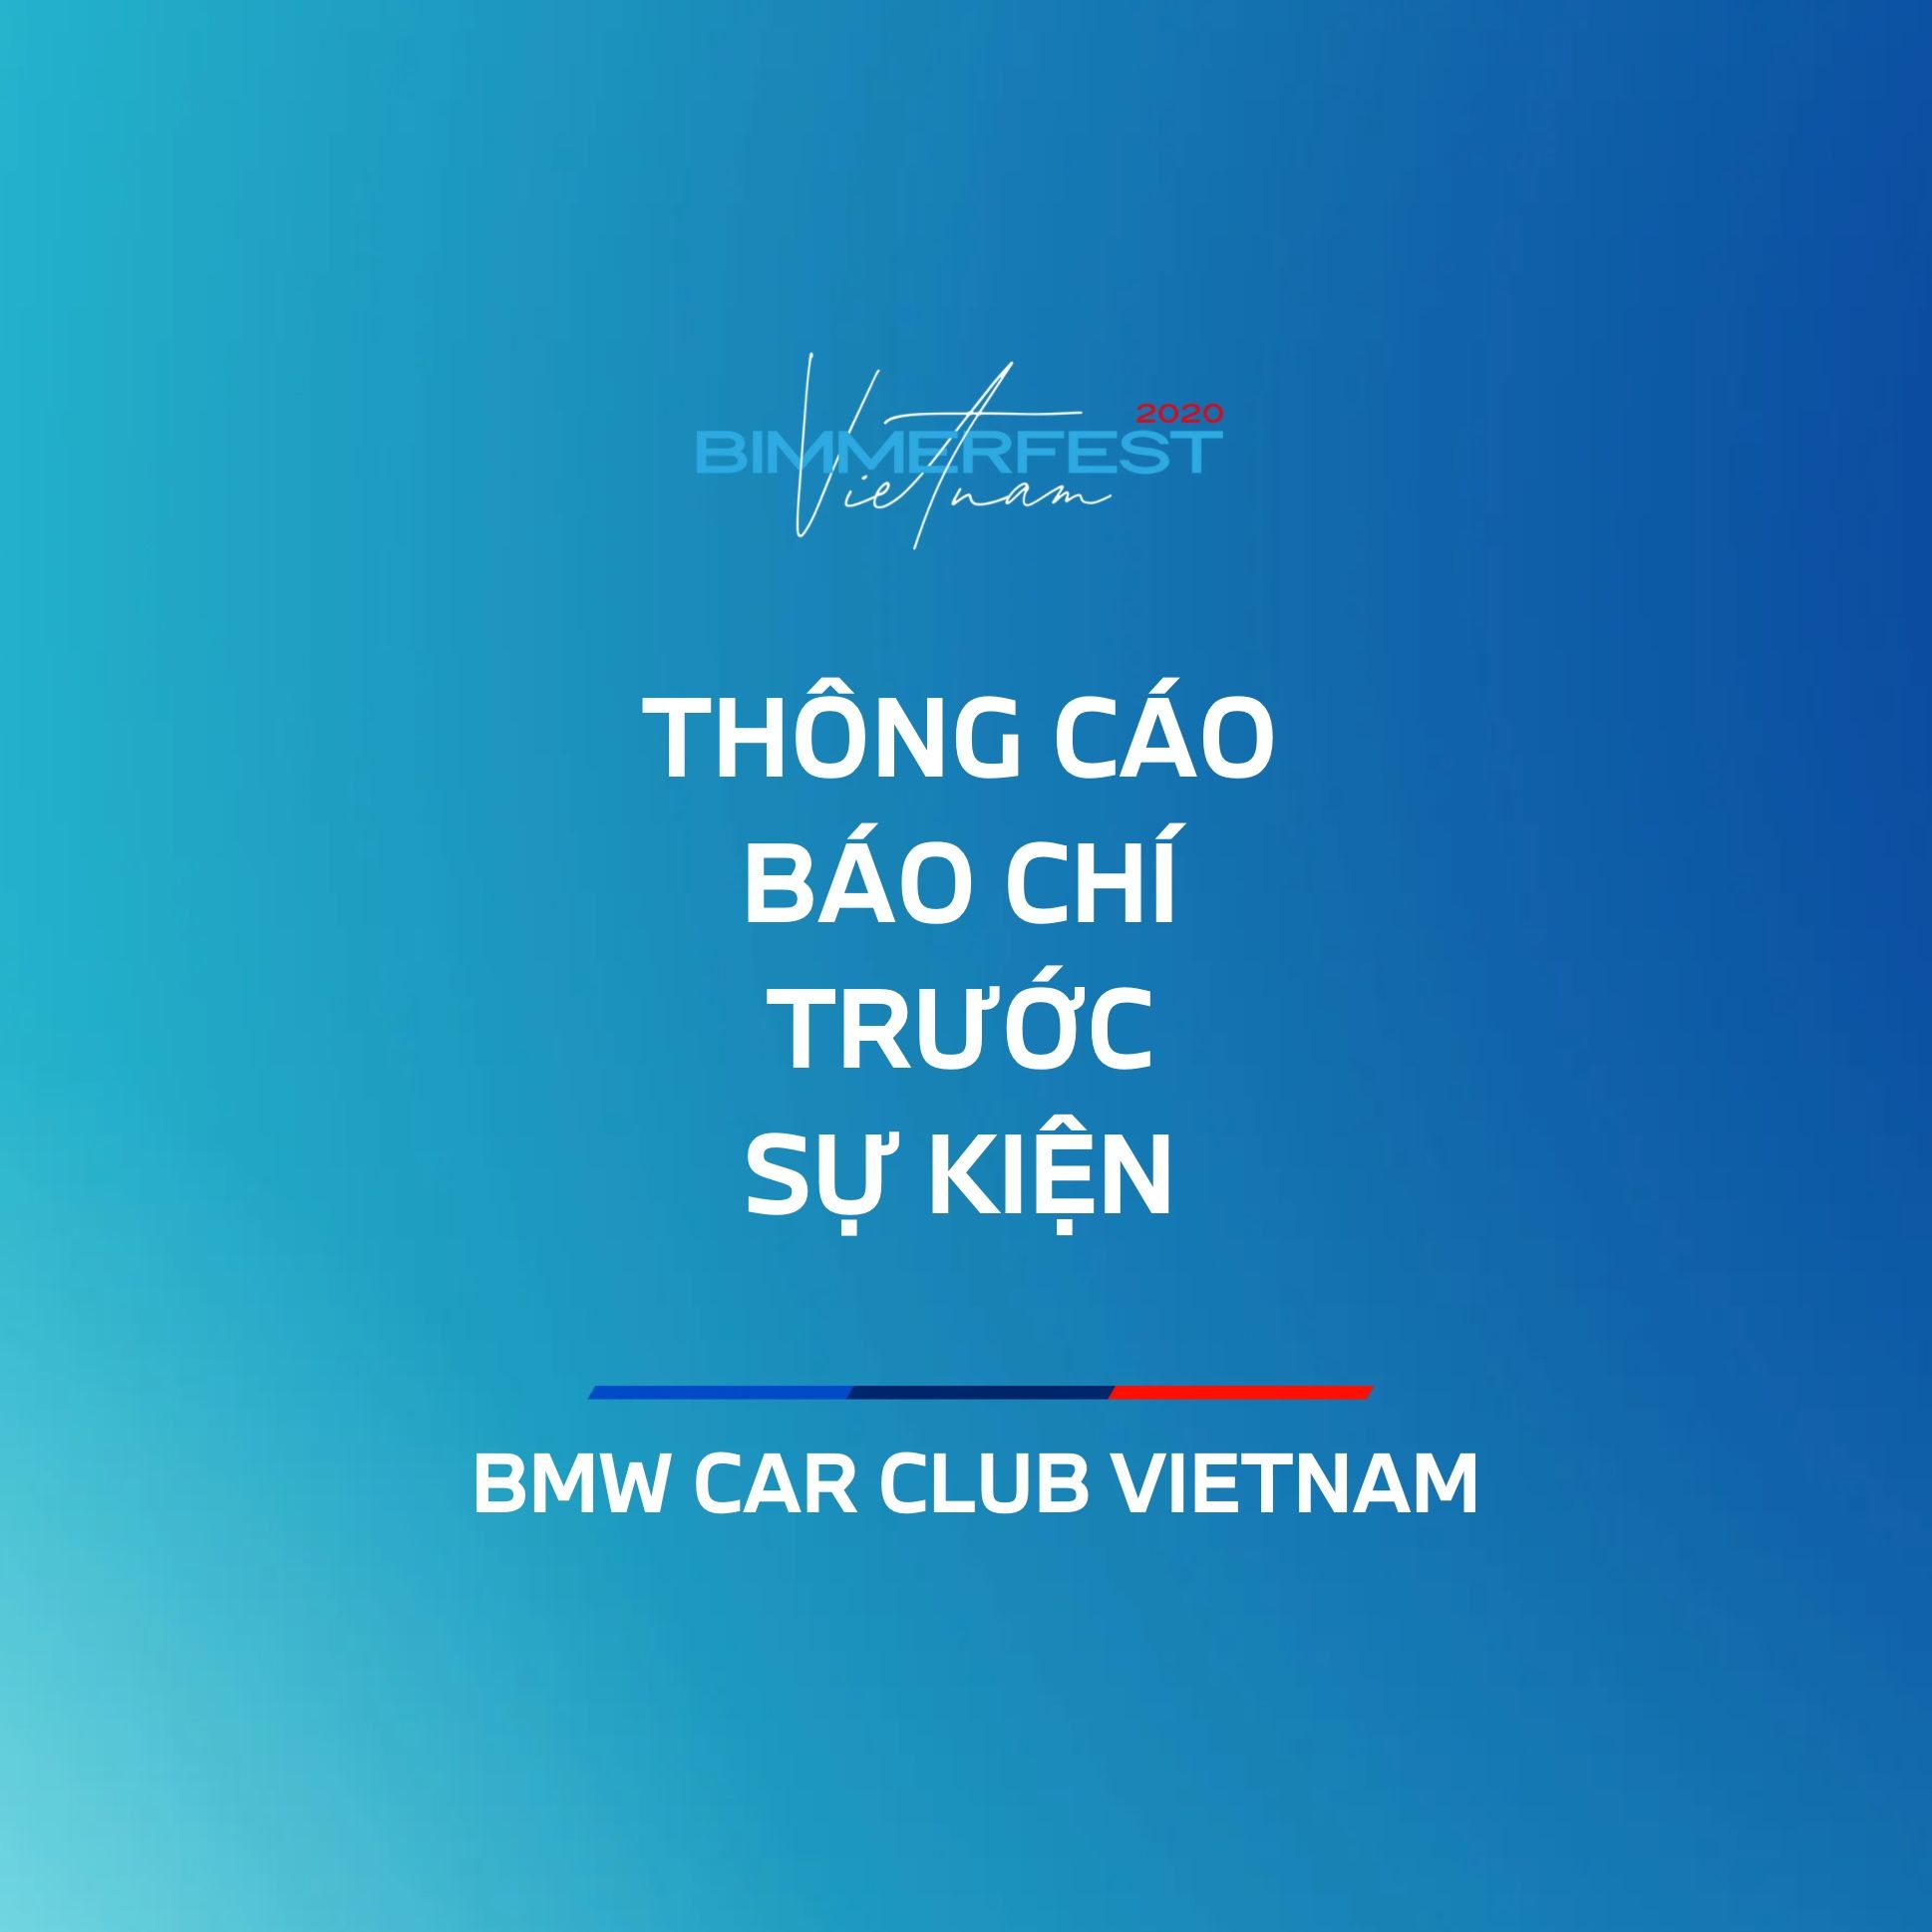 Thông cáo báo chí trước sự kiện Bimmerfest Vietnam 2020